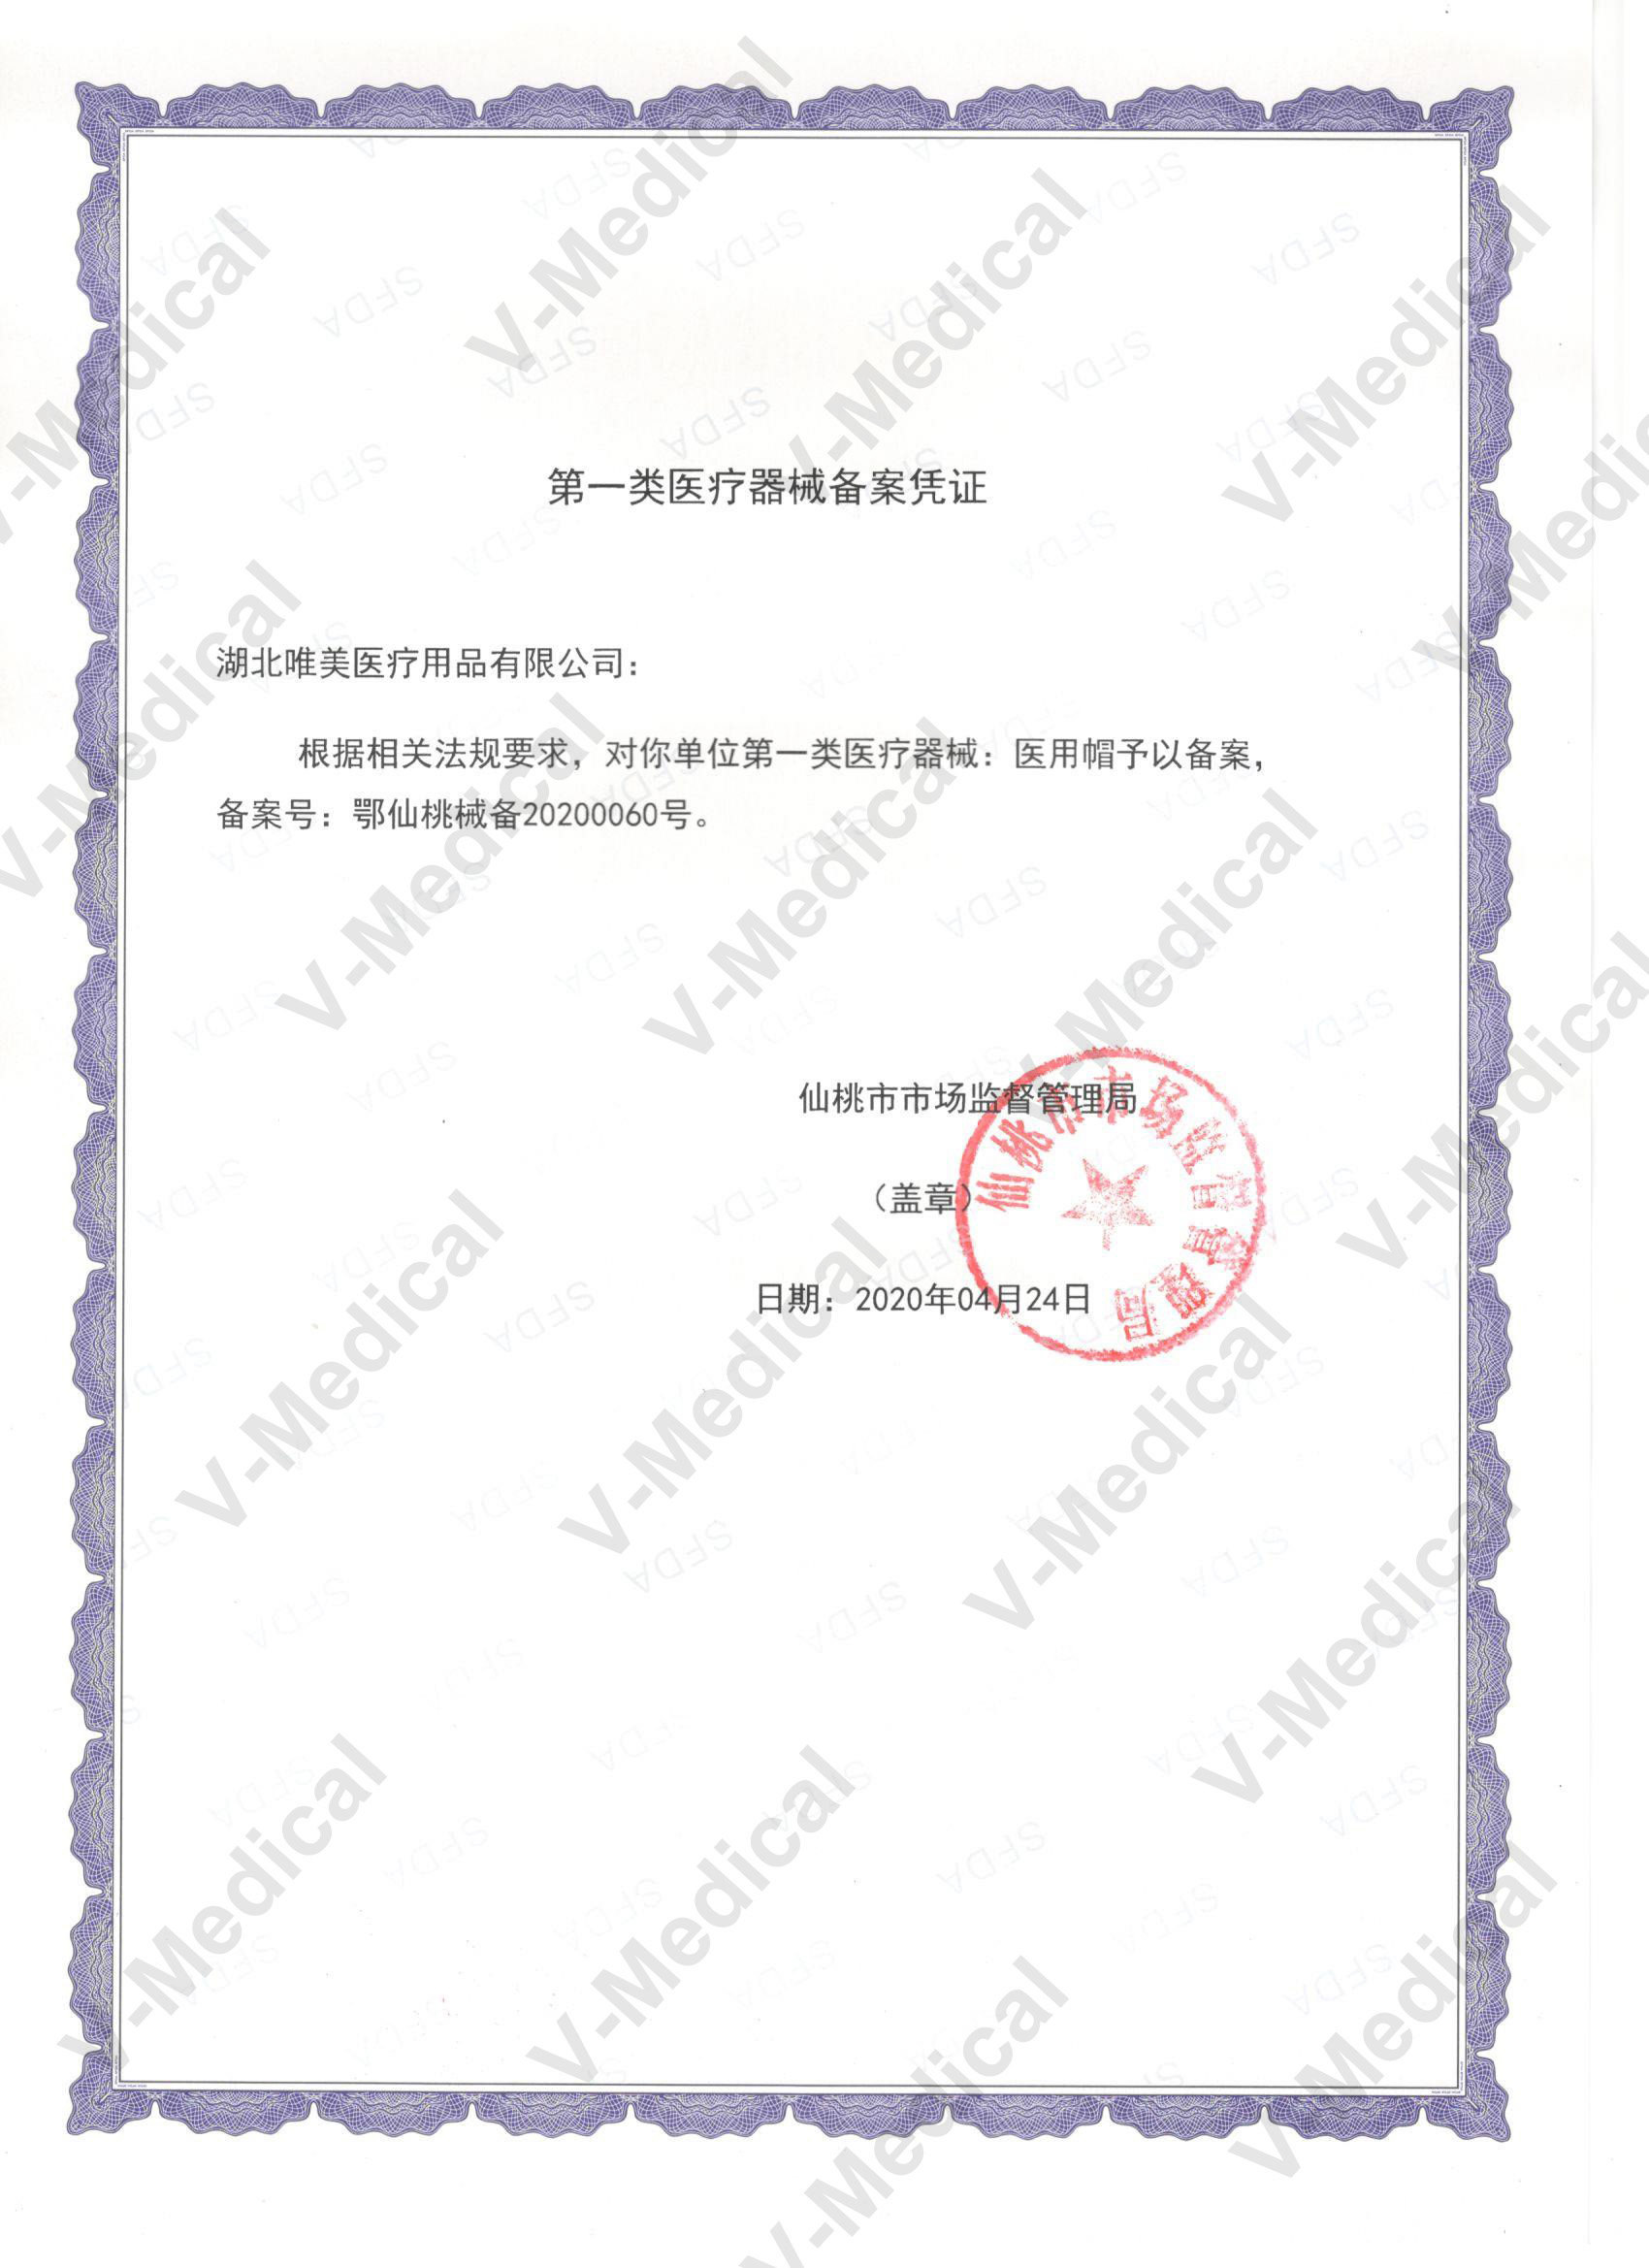 Medical Cap Filing Lease Certificate